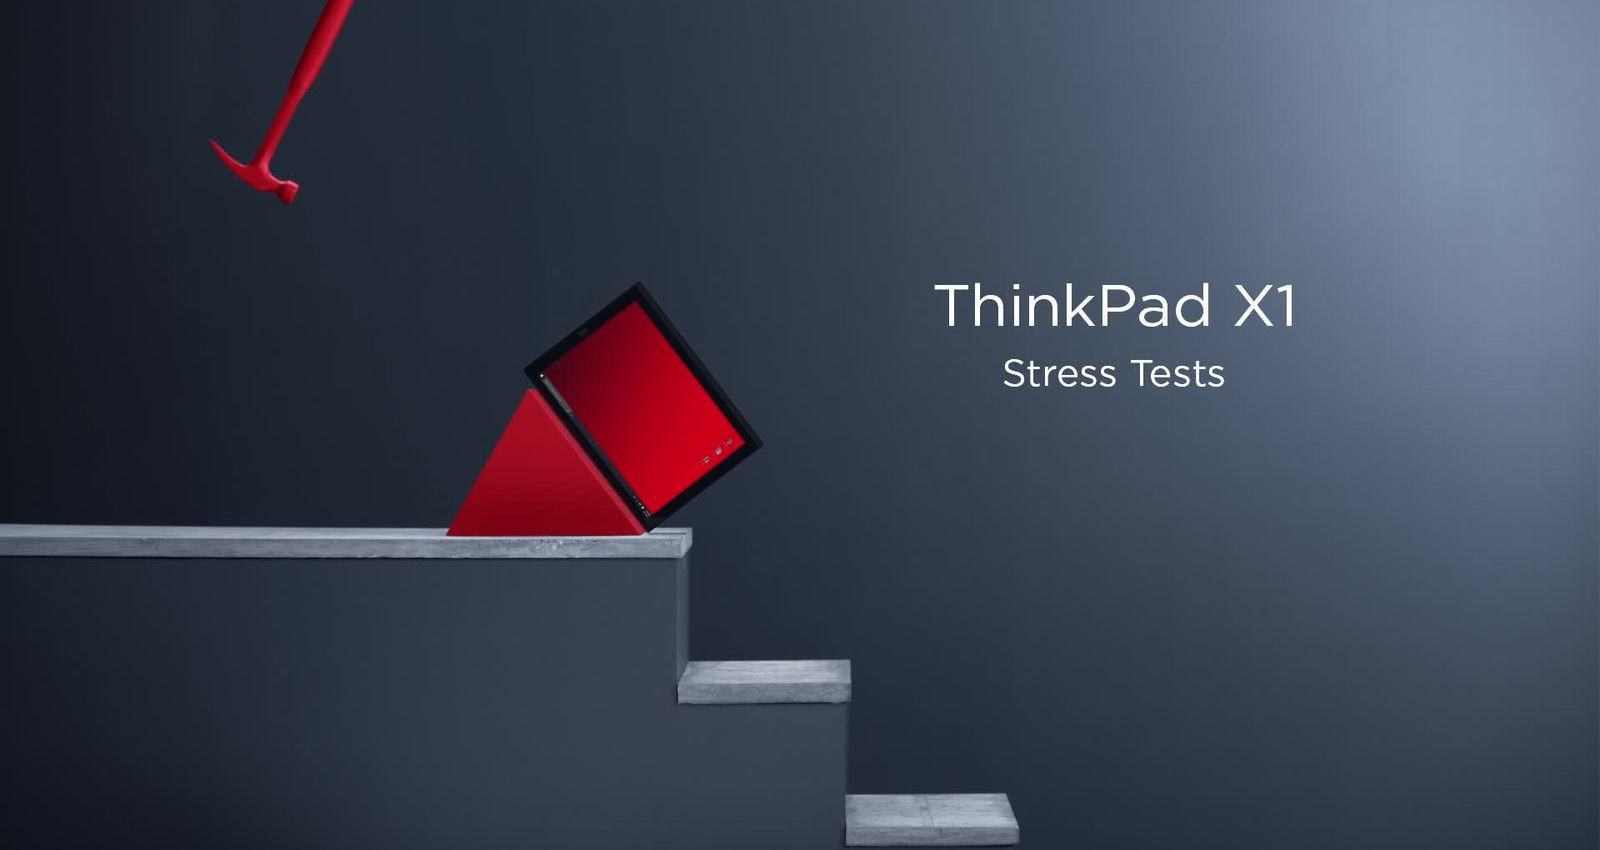 Thinkpad X1 - Stress Tests